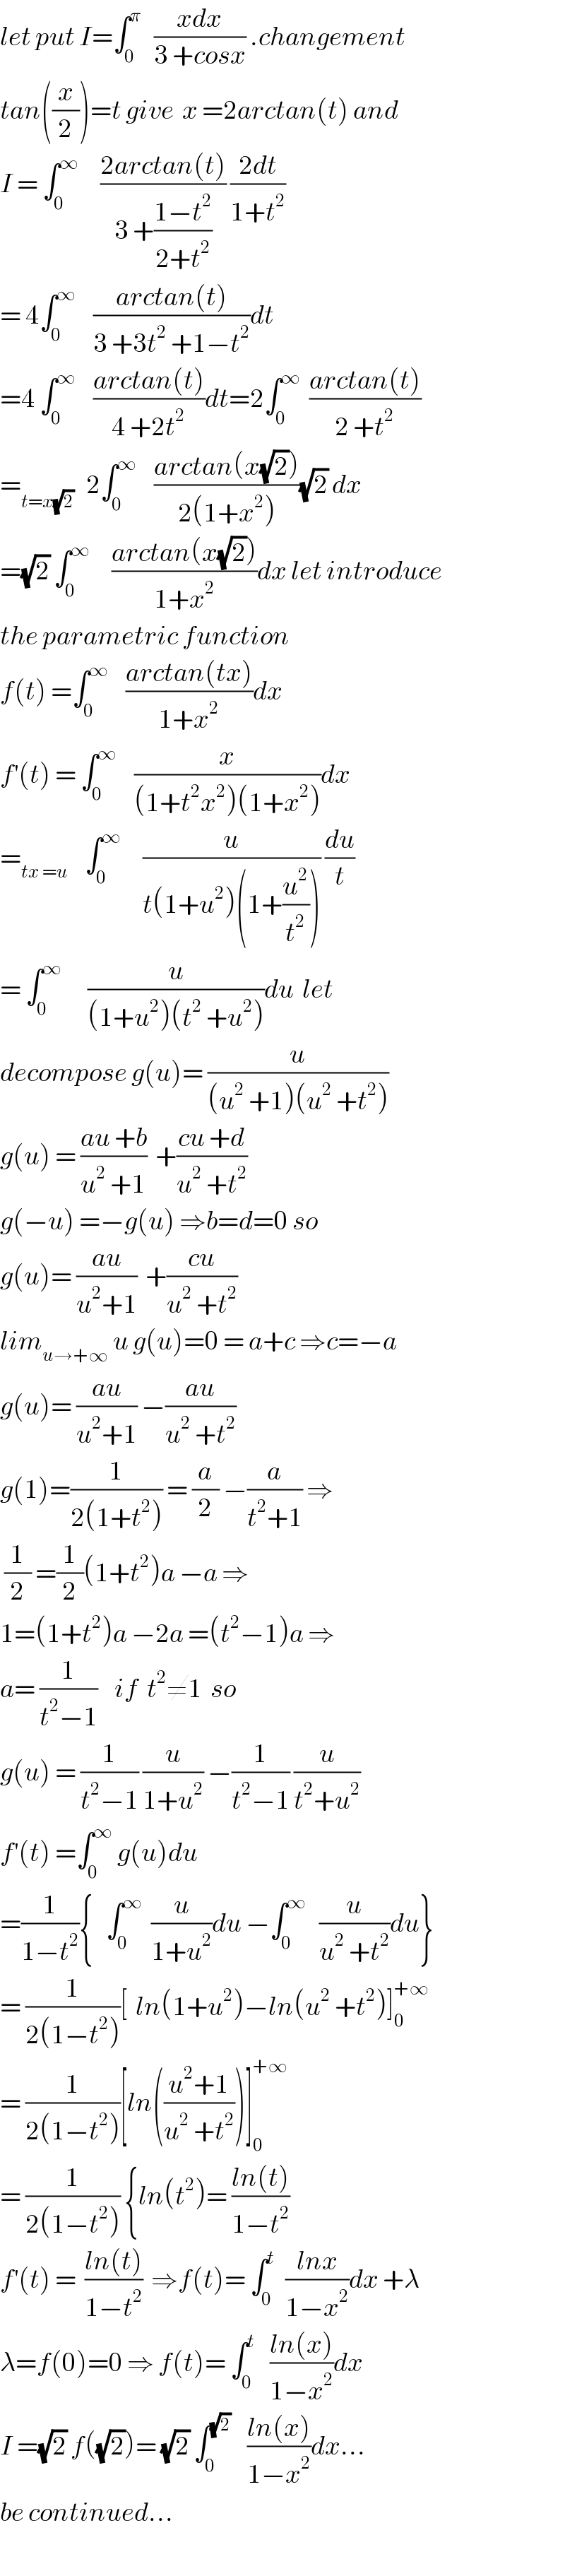 let put I=∫_0 ^π    ((xdx)/(3 +cosx)) .changement  tan((x/2))=t give  x =2arctan(t) and  I = ∫_0 ^∞      ((2arctan(t))/(3 +((1−t^2 )/(2+t^2 )))) ((2dt)/(1+t^2 ))  = 4∫_0 ^∞     ((arctan(t))/(3 +3t^2  +1−t^2 ))dt  =4 ∫_0 ^∞     ((arctan(t))/(4 +2t^2 ))dt=2∫_0 ^∞   ((arctan(t))/(2 +t^2 ))  =_(t=x(√2))    2∫_0 ^∞     ((arctan(x(√2)))/(2(1+x^2 )))(√2) dx  =(√2) ∫_0 ^∞      ((arctan(x(√2)))/(1+x^2 ))dx let introduce  the parametric function  f(t) =∫_0 ^∞     ((arctan(tx))/(1+x^2 ))dx  f^′ (t) = ∫_0 ^∞     (x/((1+t^2 x^2 )(1+x^2 )))dx  =_(tx =u)     ∫_0 ^∞      (u/(t(1+u^2 )(1+(u^2 /t^2 )))) (du/t)  = ∫_0 ^∞       (u/((1+u^2 )(t^2  +u^2 )))du  let  decompose g(u)= (u/((u^2  +1)(u^2  +t^2 )))  g(u) = ((au +b)/(u^2  +1))  +((cu +d)/(u^2  +t^2 ))  g(−u) =−g(u) ⇒b=d=0 so  g(u)= ((au)/(u^2 +1))  +((cu)/(u^2  +t^2 ))  lim_(u→+∞)  u g(u)=0 = a+c ⇒c=−a  g(u)= ((au)/(u^2 +1)) −((au)/(u^2  +t^2 ))  g(1)=(1/(2(1+t^2 ))) = (a/2) −(a/(t^2 +1)) ⇒   (1/2) =(1/2)(1+t^2 )a −a ⇒  1=(1+t^2 )a −2a =(t^2 −1)a ⇒  a= (1/(t^2 −1))    if  t^2 ≠1  so  g(u) = (1/(t^2 −1)) (u/(1+u^2 )) −(1/(t^2 −1)) (u/(t^2 +u^2 ))  f^′ (t) =∫_0 ^∞  g(u)du  =(1/(1−t^2 )){   ∫_0 ^∞   (u/(1+u^2 ))du −∫_0 ^∞    (u/(u^2  +t^2 ))du}  = (1/(2(1−t^2 )))[  ln(1+u^2 )−ln(u^2  +t^2 )]_0 ^(+∞)   = (1/(2(1−t^2 )))[ln(((u^2 +1)/(u^2  +t^2 )))]_0 ^(+∞)   = (1/(2(1−t^2 ))) {ln(t^2 )= ((ln(t))/(1−t^2 ))  f^′ (t) =  ((ln(t))/(1−t^2 ))  ⇒f(t)= ∫_0 ^t   ((lnx)/(1−x^2 ))dx +λ  λ=f(0)=0 ⇒ f(t)= ∫_0 ^t    ((ln(x))/(1−x^2 ))dx  I =(√2) f((√2))= (√2) ∫_0 ^(√2)     ((ln(x))/(1−x^2 ))dx...  be continued...  